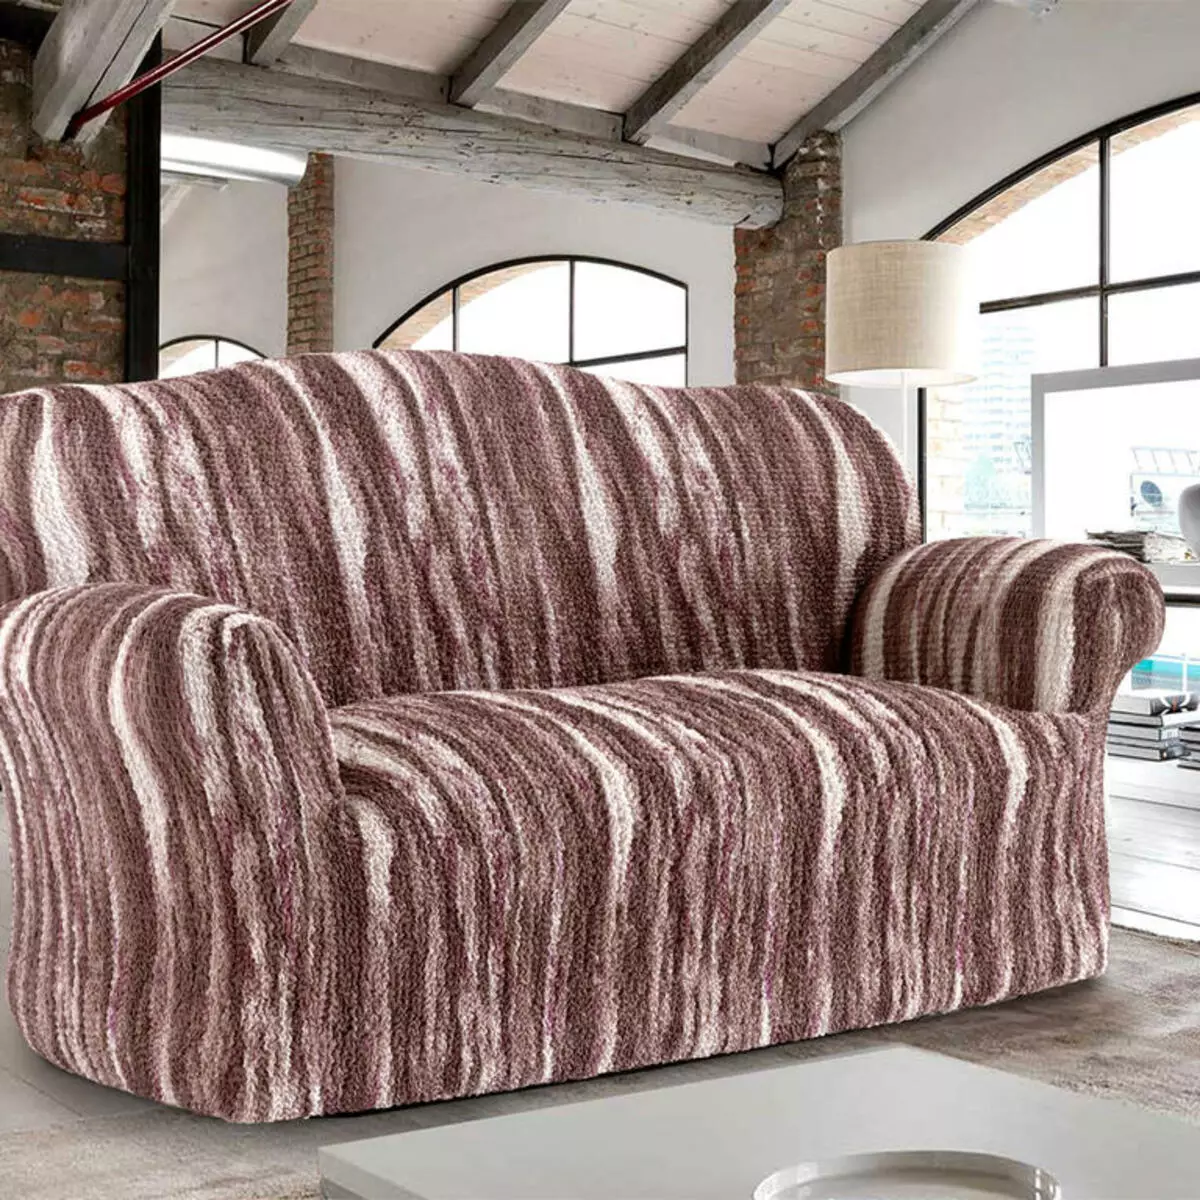 پوشش بر روی مبل و صندلی: Eurochells، مجموعه ای از فرش ها و پوشش های جهانی، از محیط زیست و پارچه، با دستگیره و بدون 20869_24